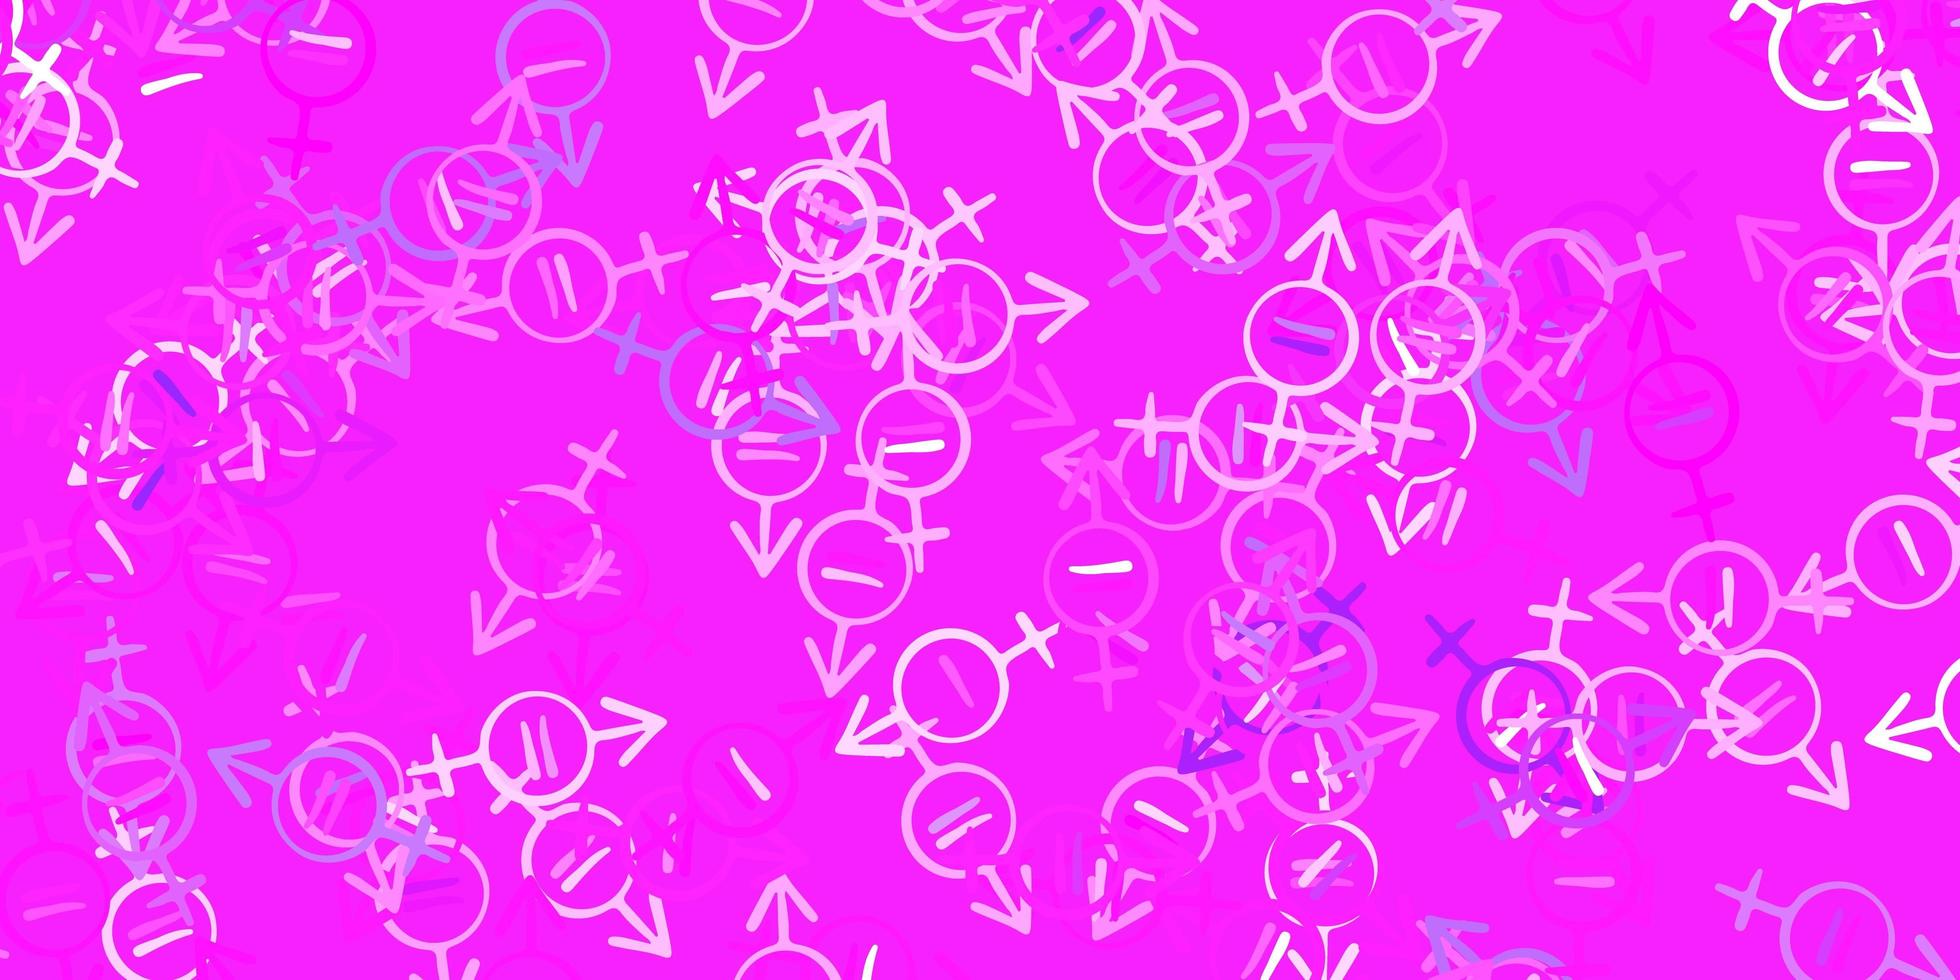 modèle vectoriel rose violet clair avec des éléments de féminisme